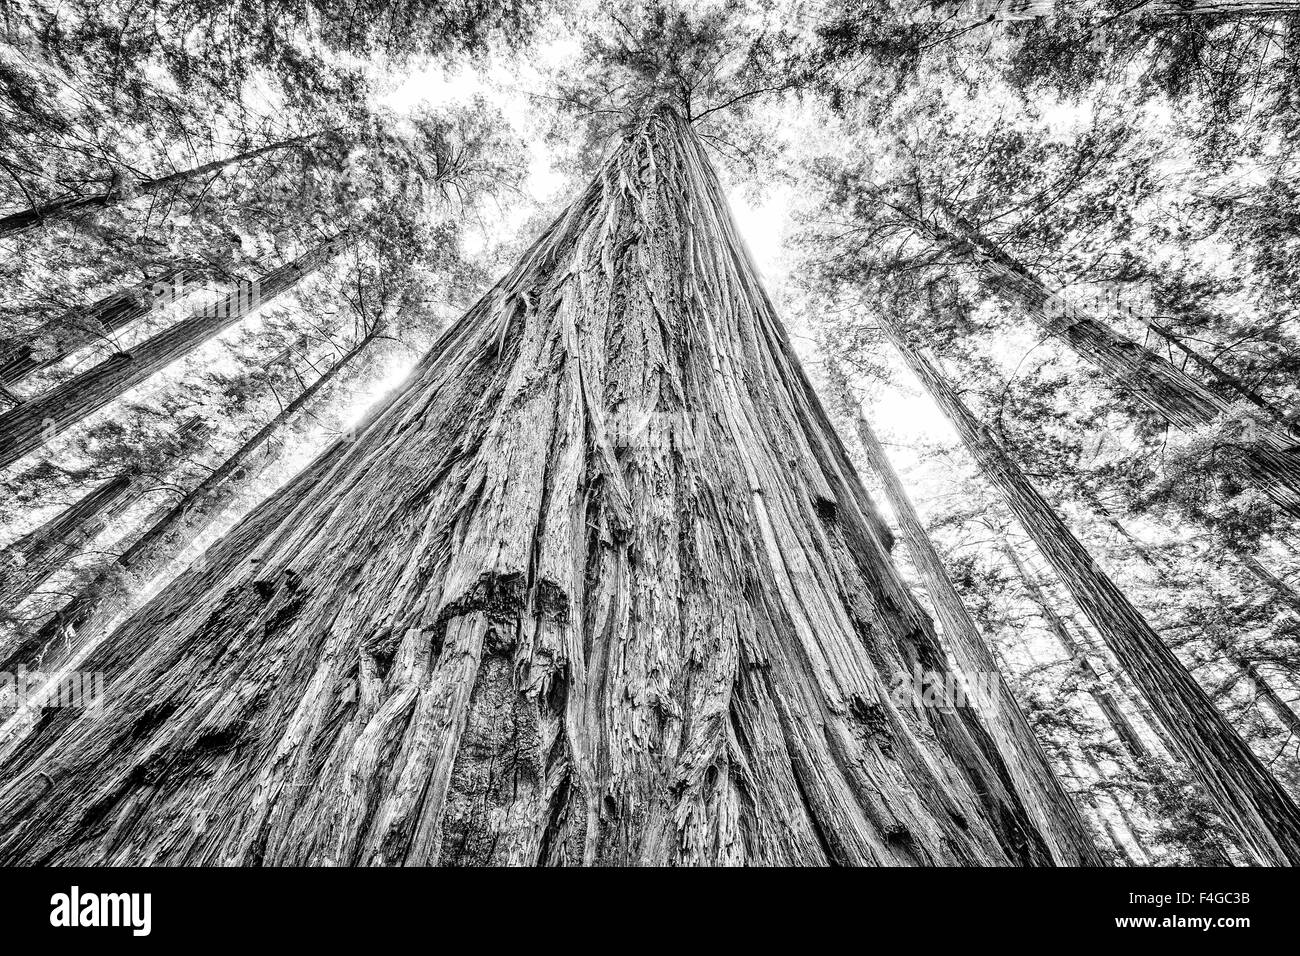 Roosevelt Park, Humboldt Redwoods State Park, Californie Banque D'Images